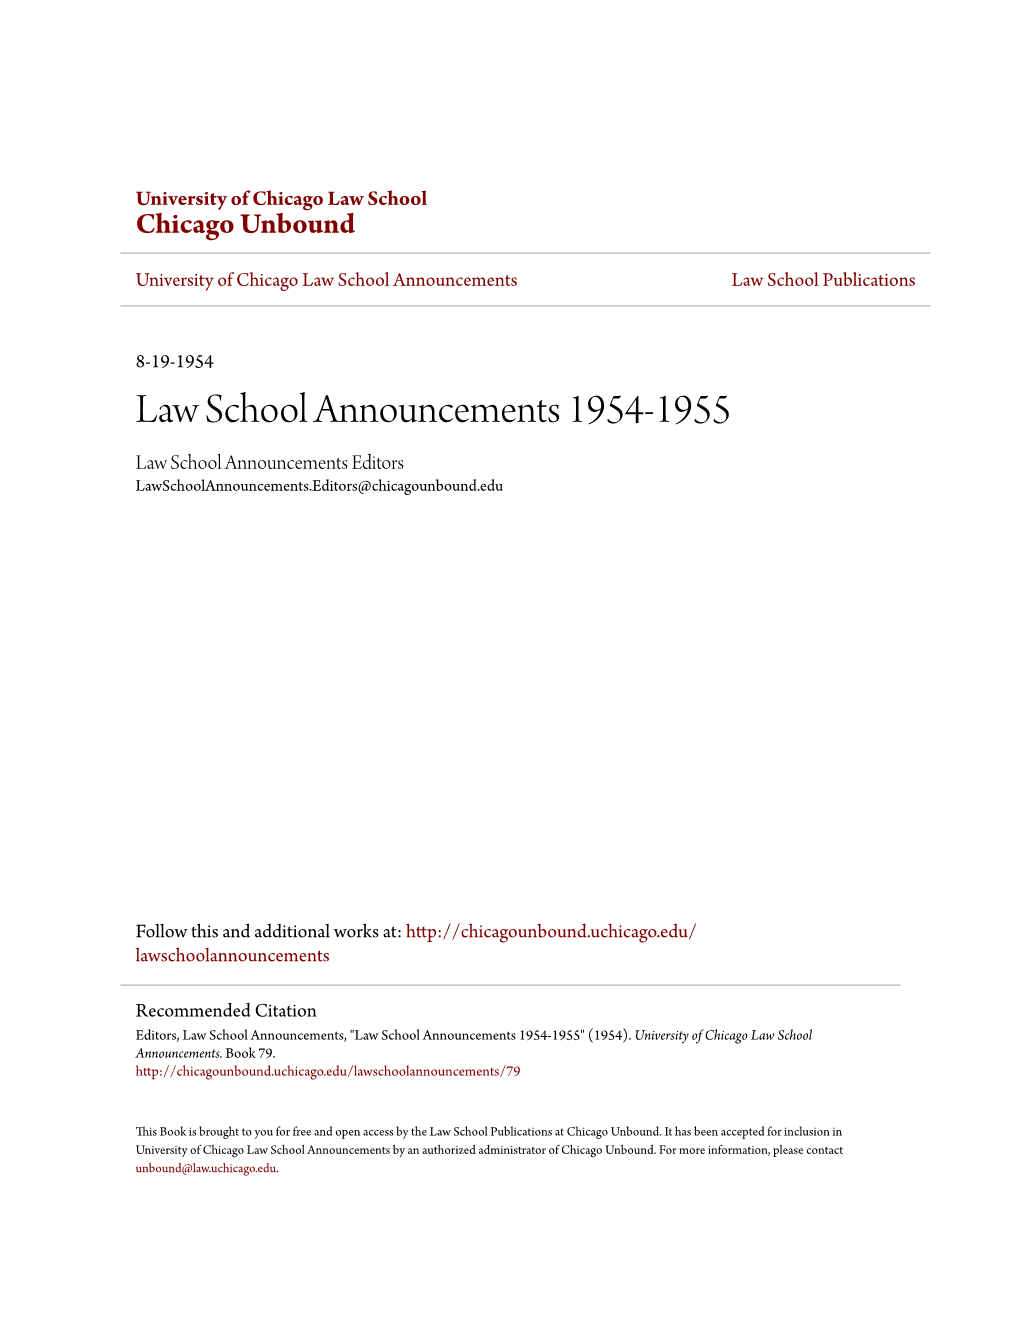 Law School Announcements 1954-1955 Law School Announcements Editors Lawschoolannouncements.Editors@Chicagounbound.Edu